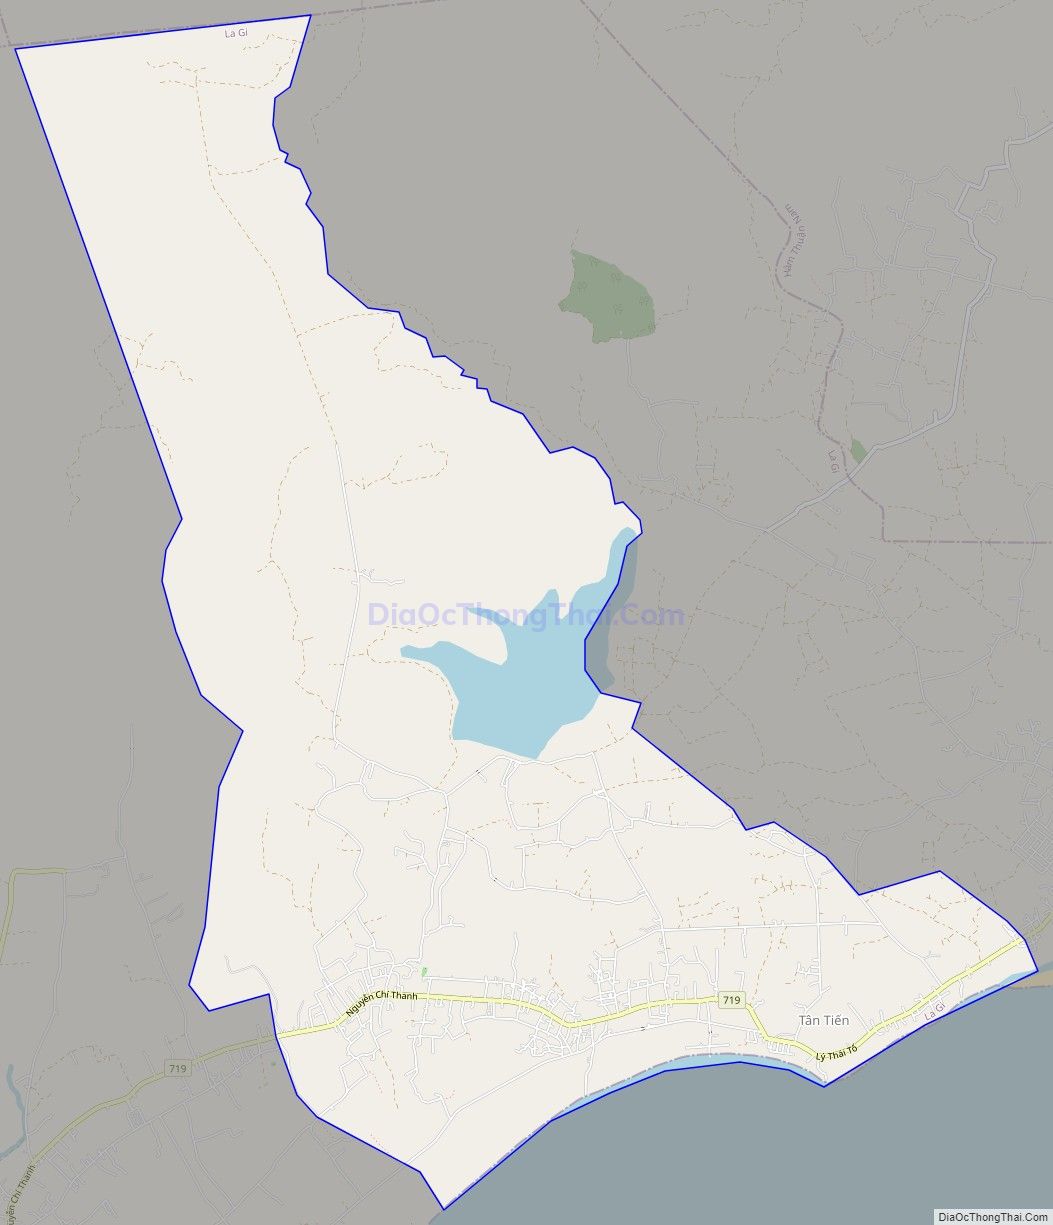 Bản đồ giao thông xã Tân Tiến, thị xã La Gi